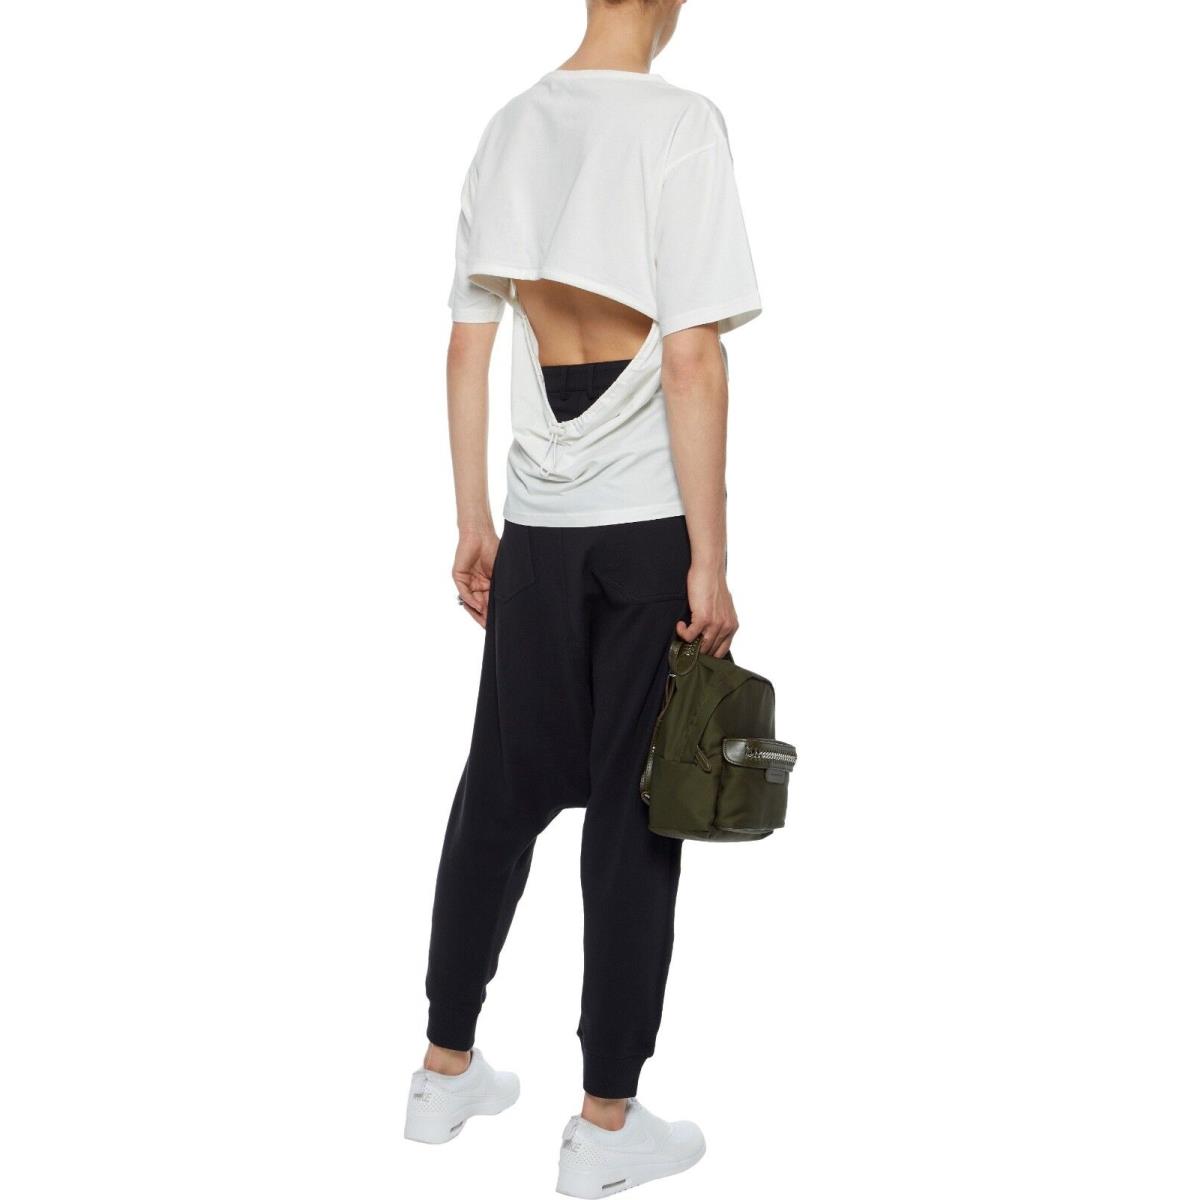 Adidas Y-3 by Yohji Yamamoto Women`s Cutout Stretch Cotton Jersey T-shirt White Size XS